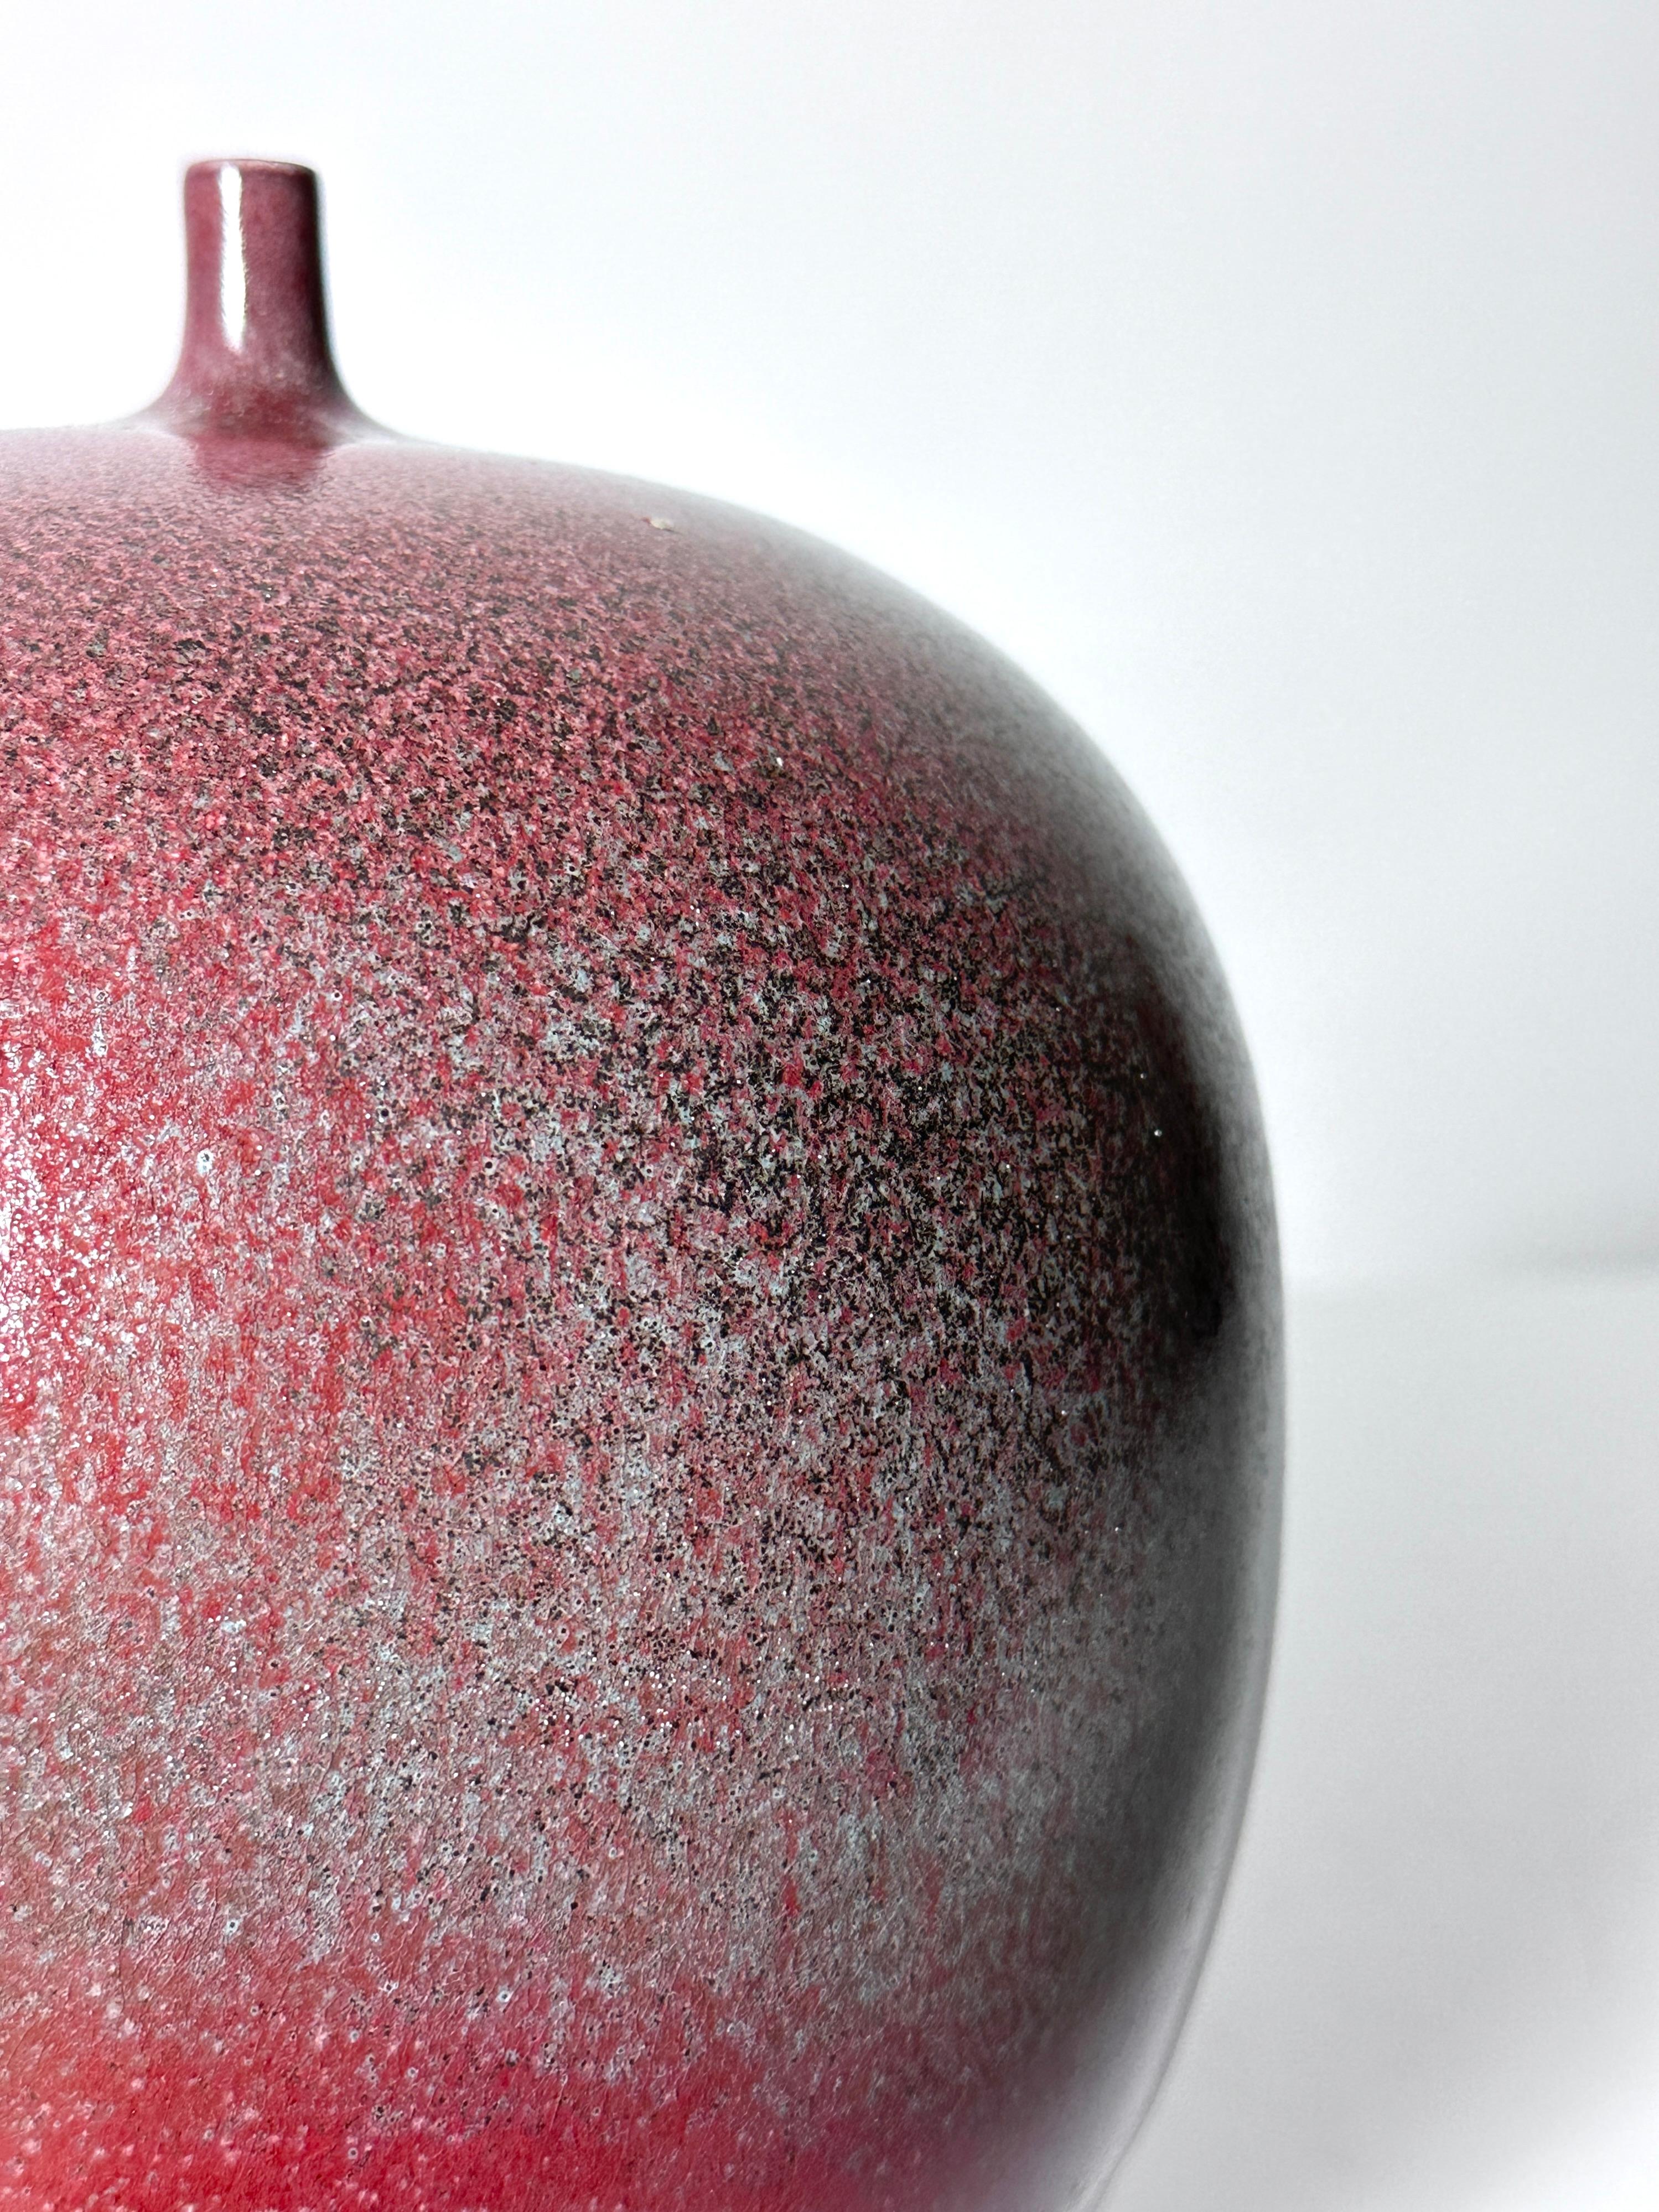 Cliff Lee Porcelain Teardrop Vase in Oxblood Glaze 1994 For Sale 3